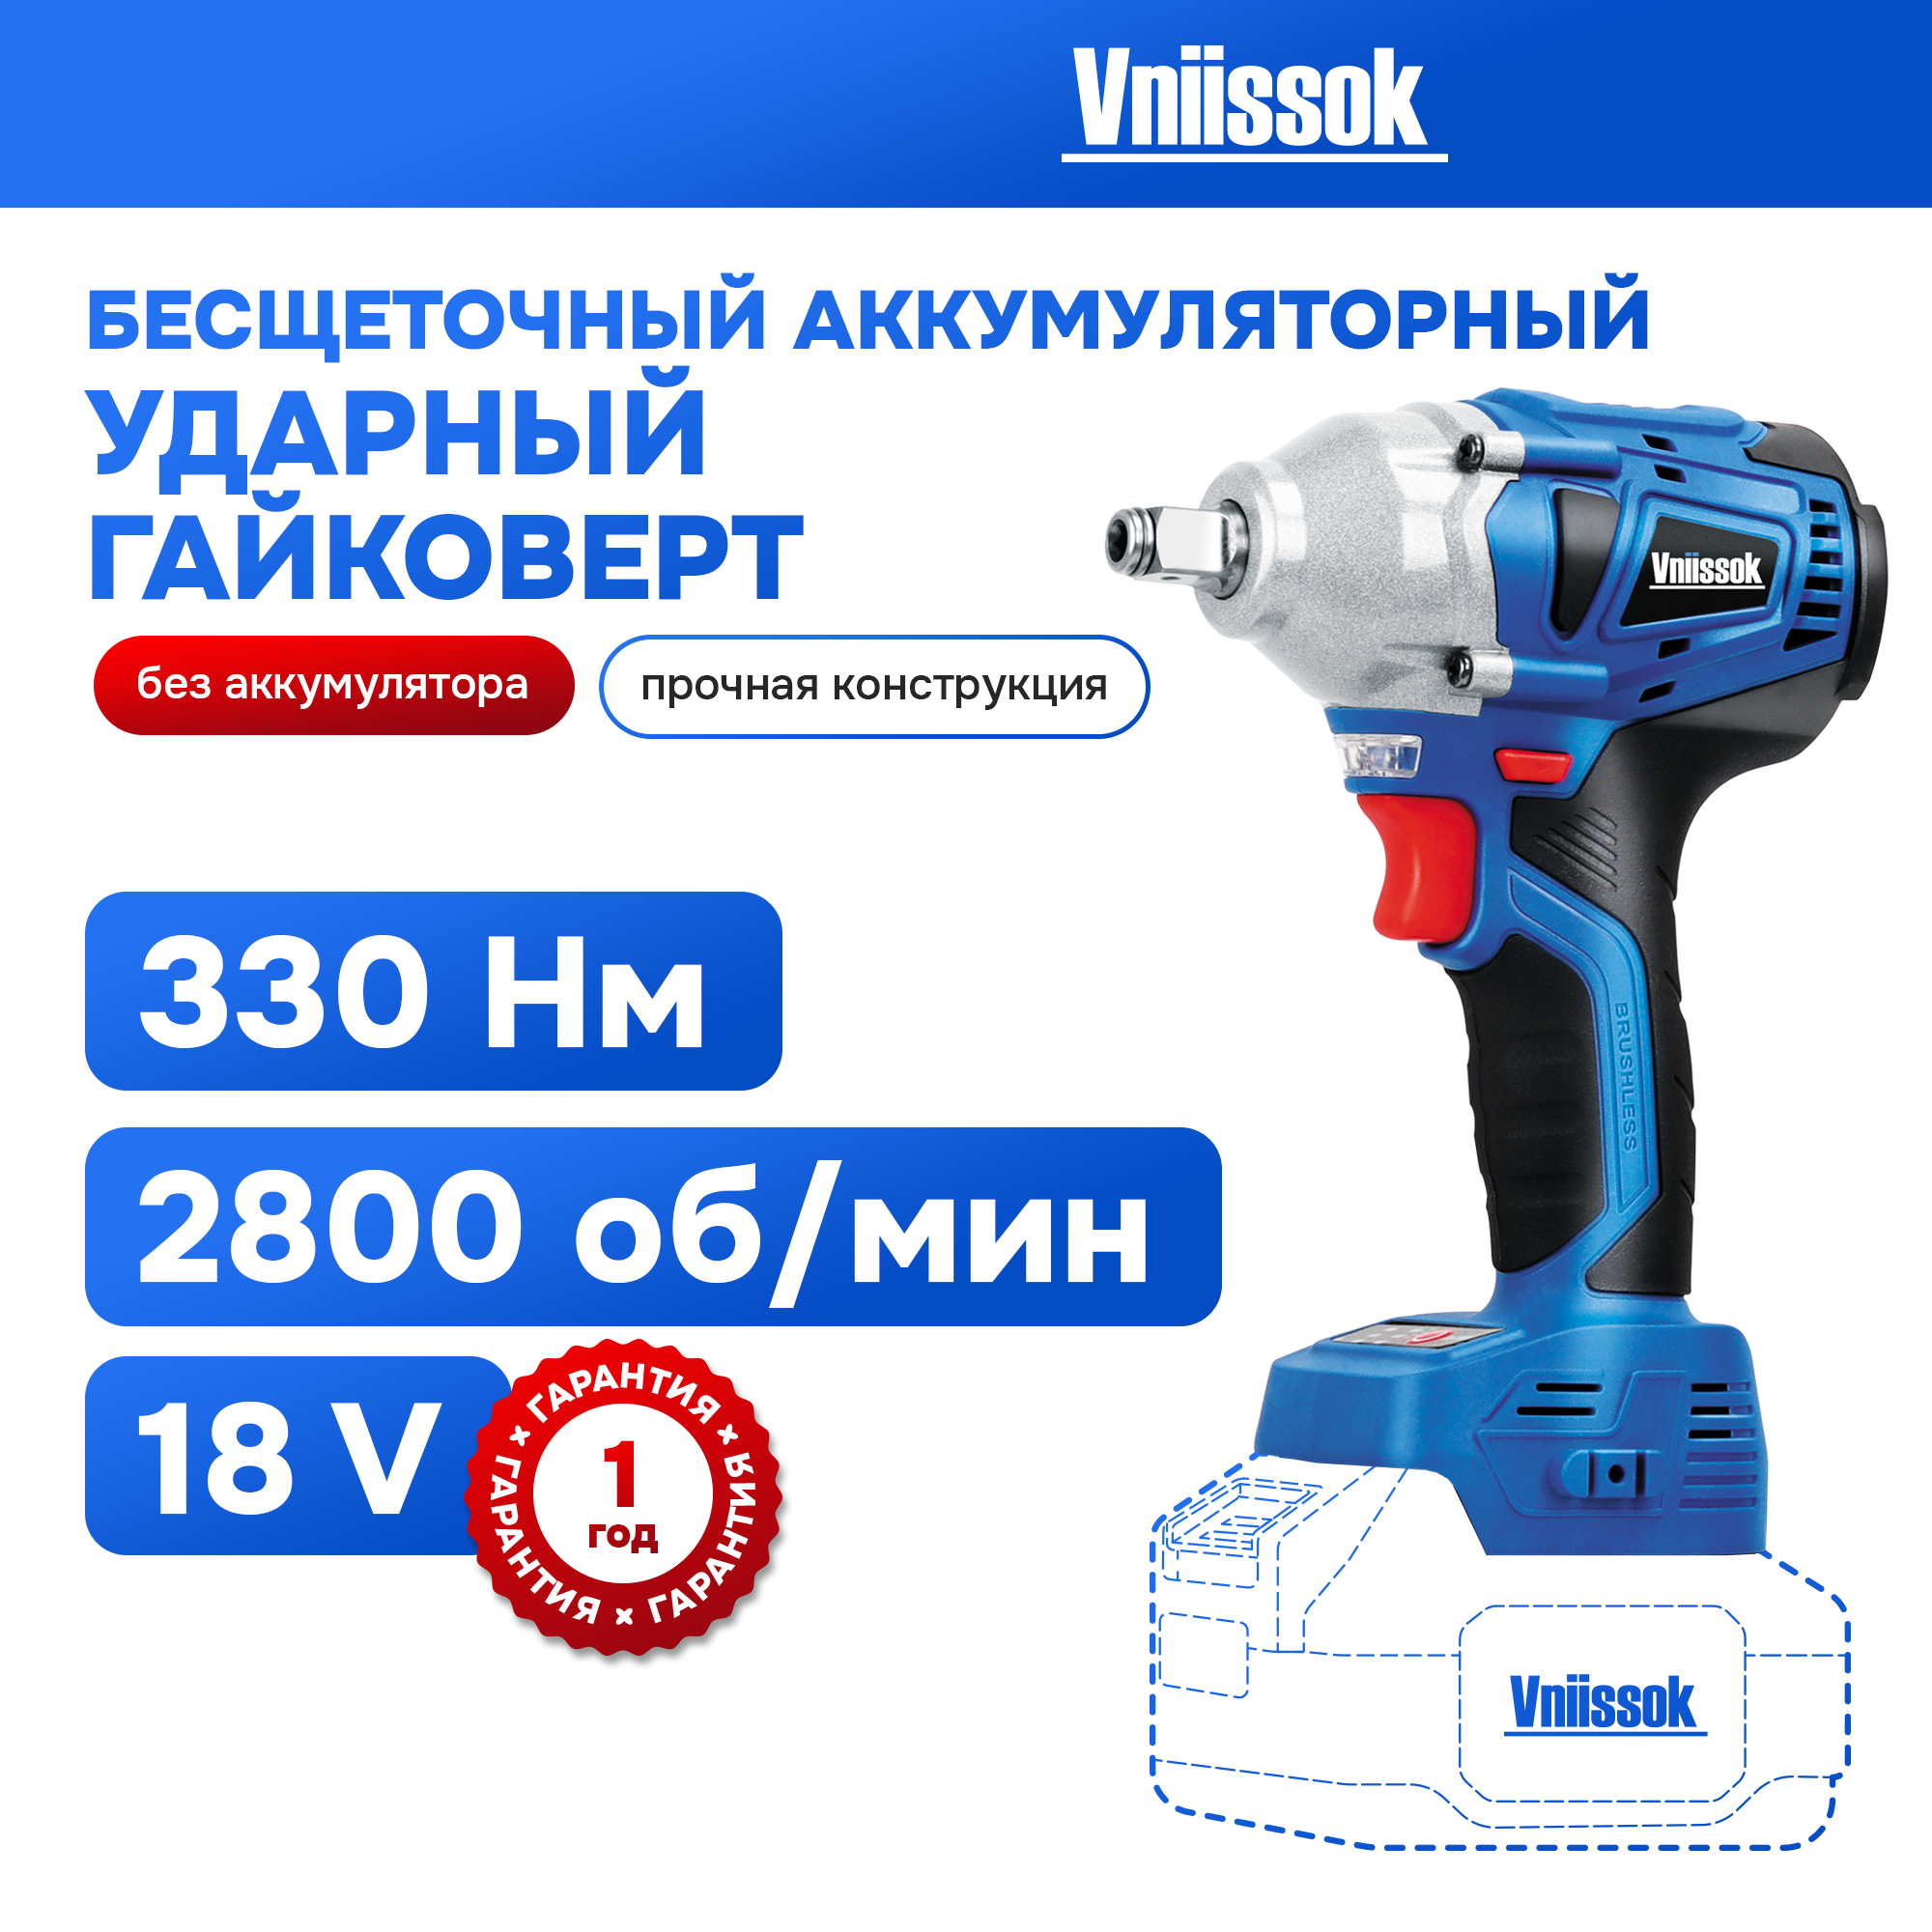 Гайковерт винтоверт бесщеточный аккумуляторный ударный Vniissok 18B (без АКБ, 330 Nm)